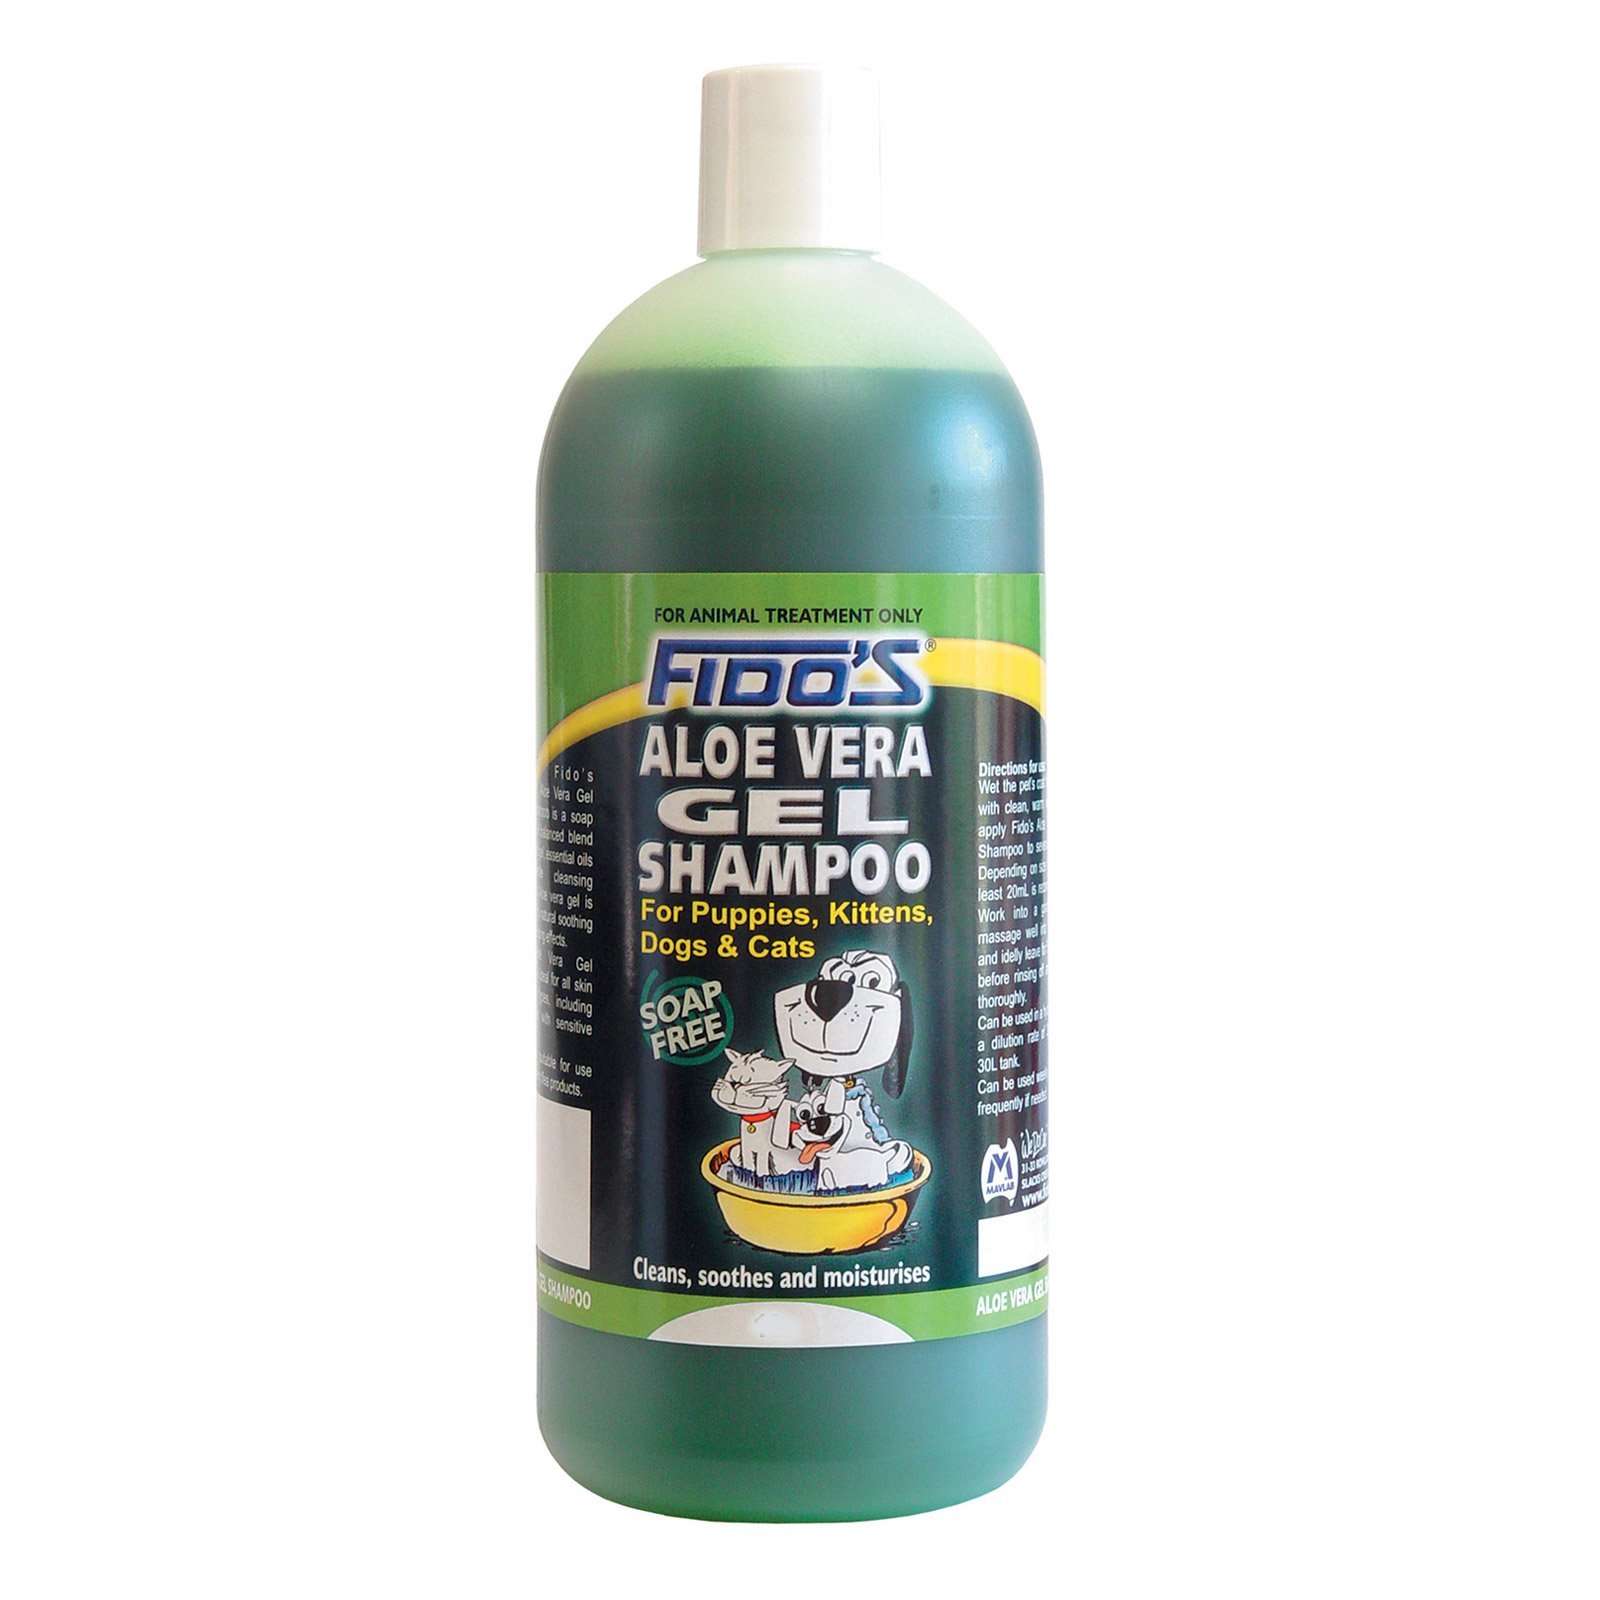 Fido's Aloe Vera Shampoo For Dogs